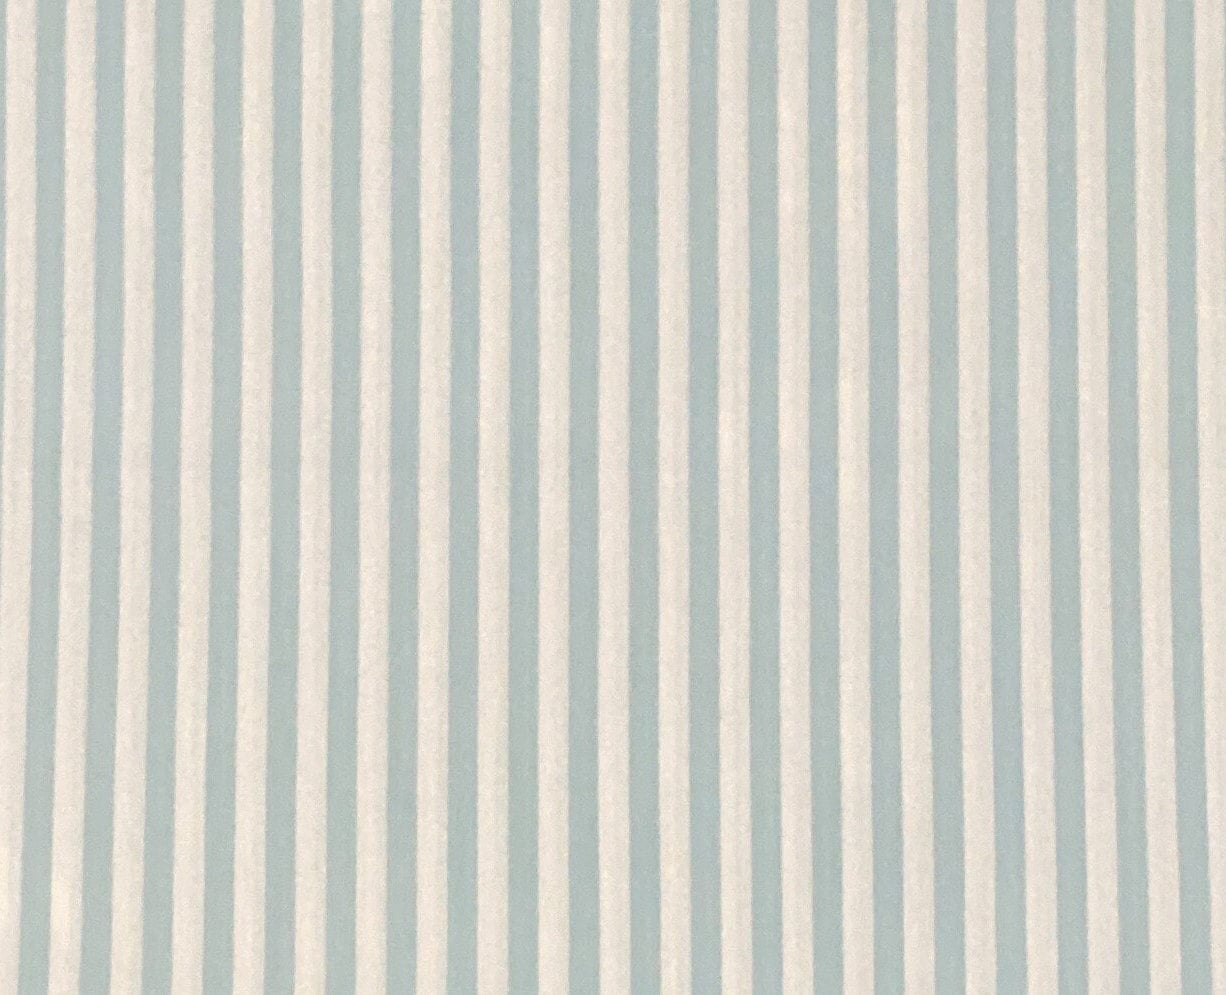 EOB - Soft White Fabric / Light Aqua Vertical (Parallel to Selvage) Stripe Fabric - Selvage to Selvage Print